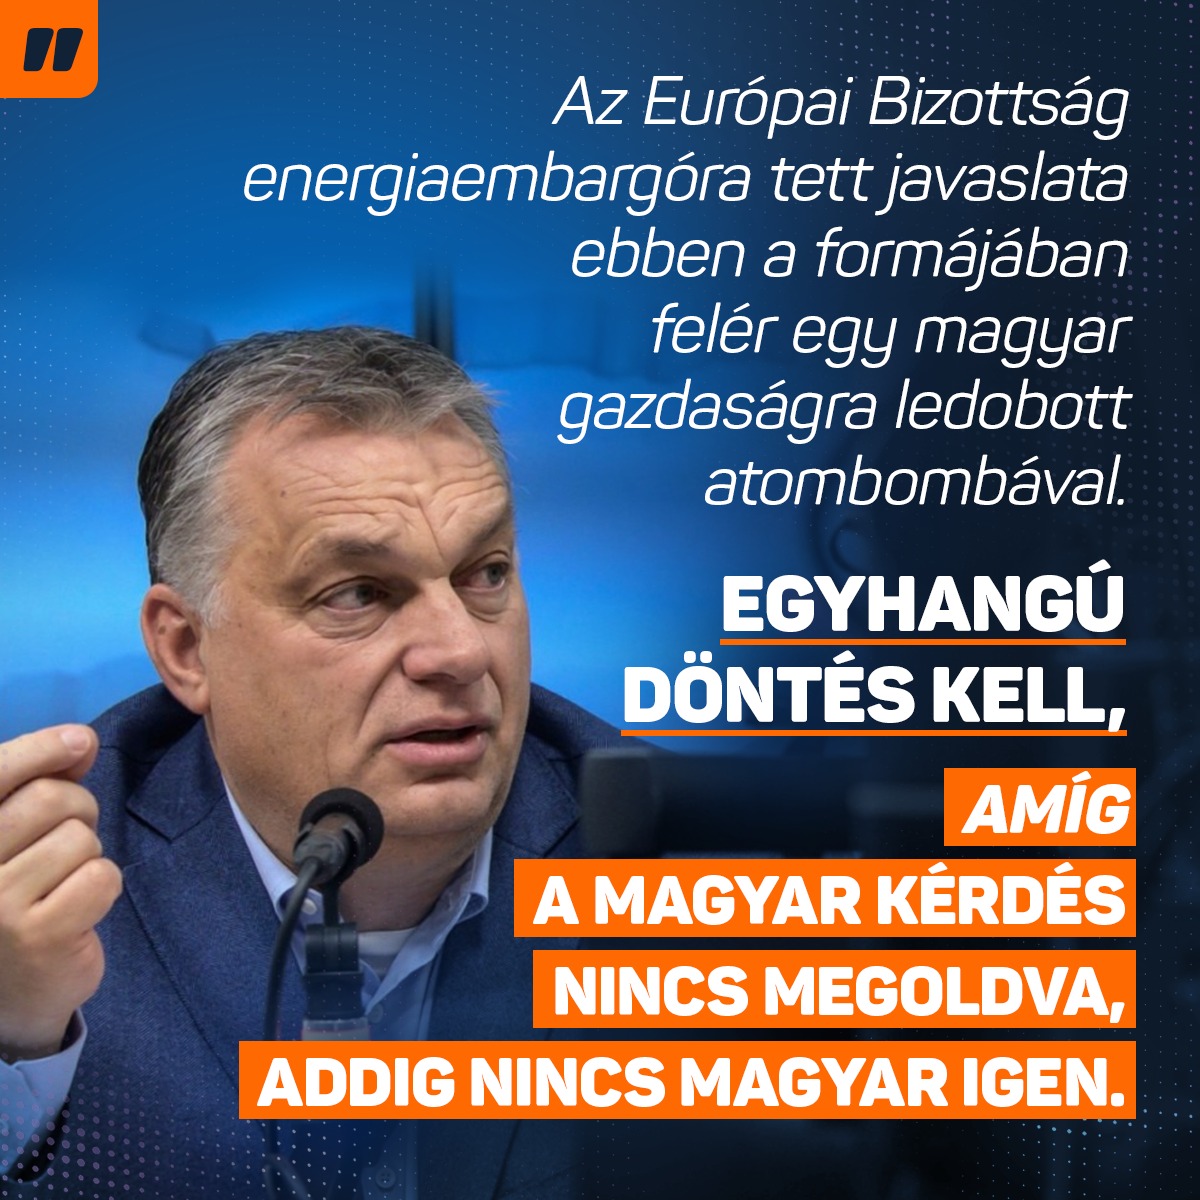 Magyarországra olaj kizárólag csak csővezetéken érkezhet. A csővezeték egyik vége Oroszországban van, a másik pedig Magyarországon. Ez egy adottság.  Olyan javaslatot, amely ezt a körülményt figyelmen kívül hagyja, nem tudunk elfogadni, mert ez a javaslat így ebben a formájában felér egy magyar gazdaságra ledobott atombombával.